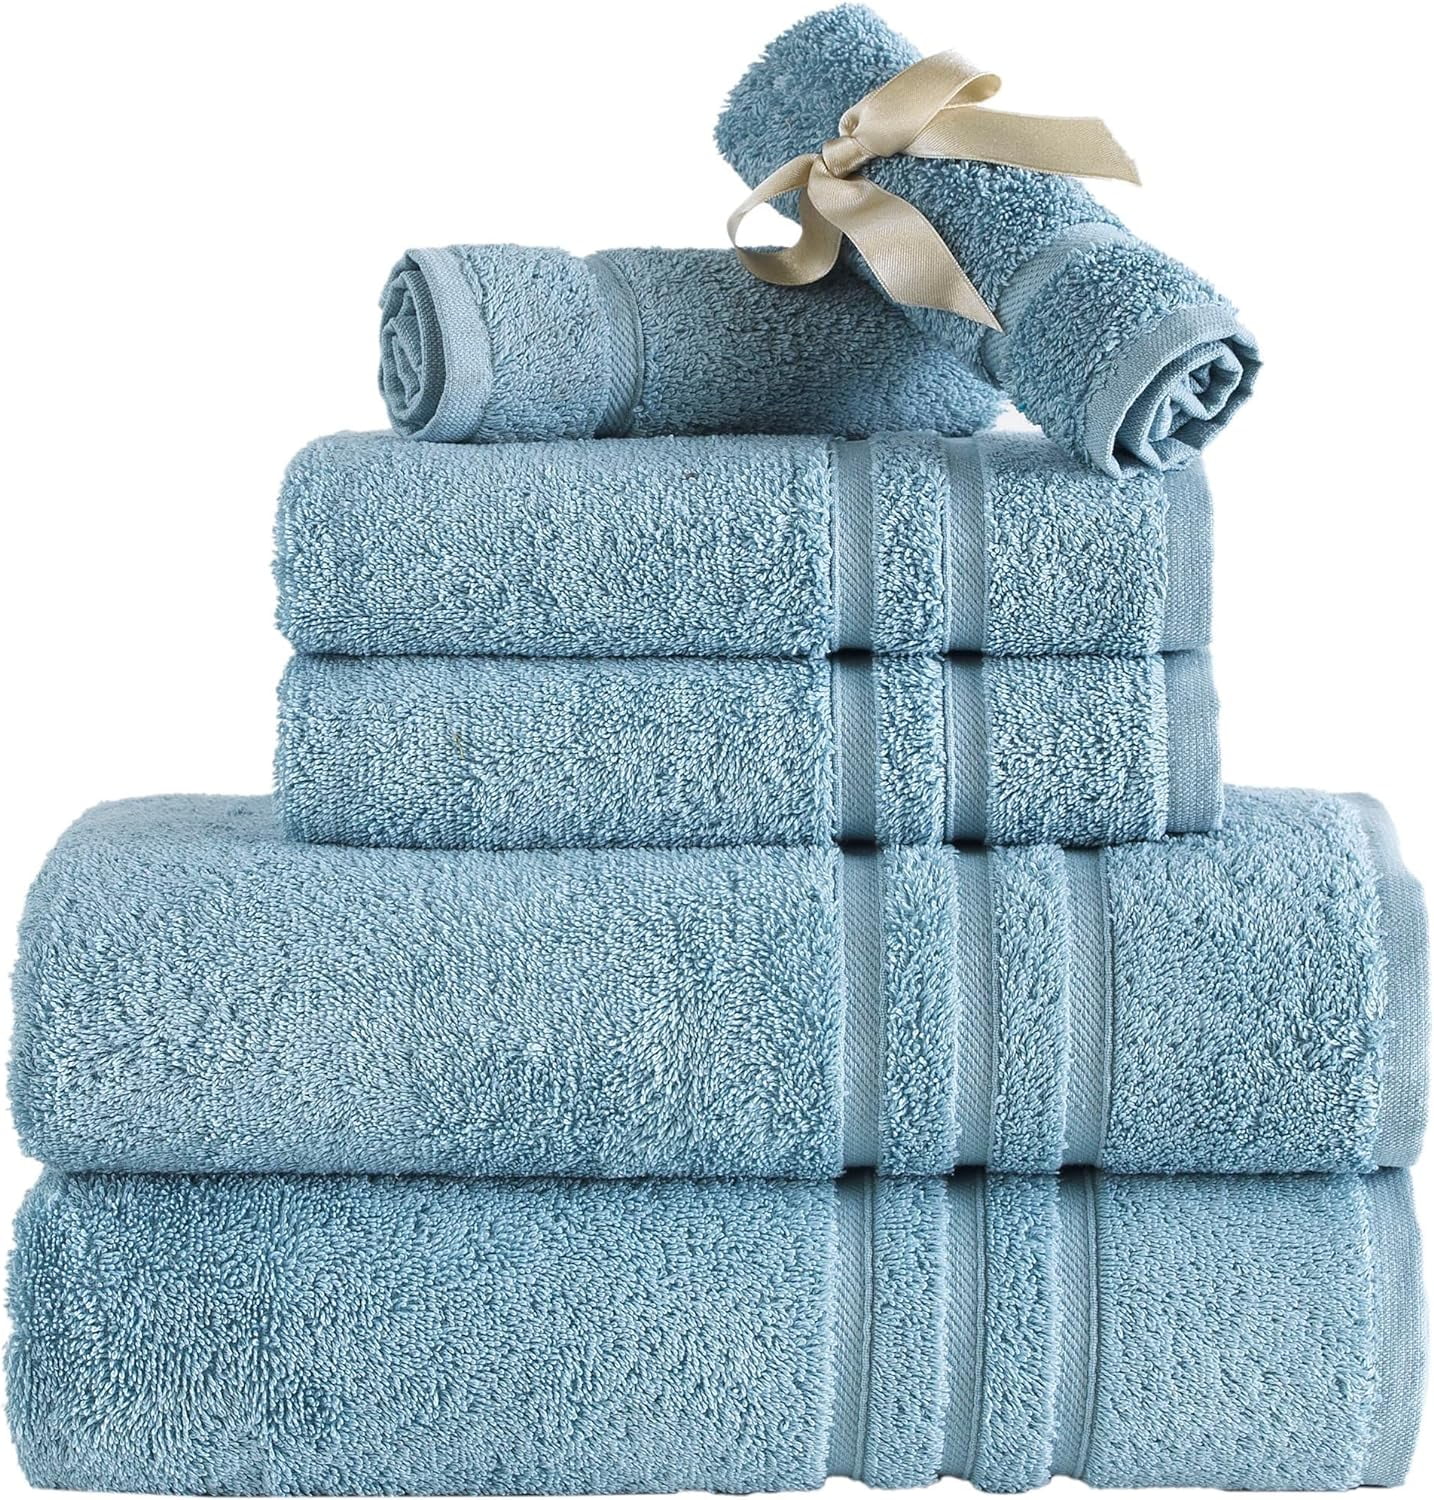 Linen Tea Towels 2 Pcs. NAVY BLUE Linen Tea Towels. Hand Towel